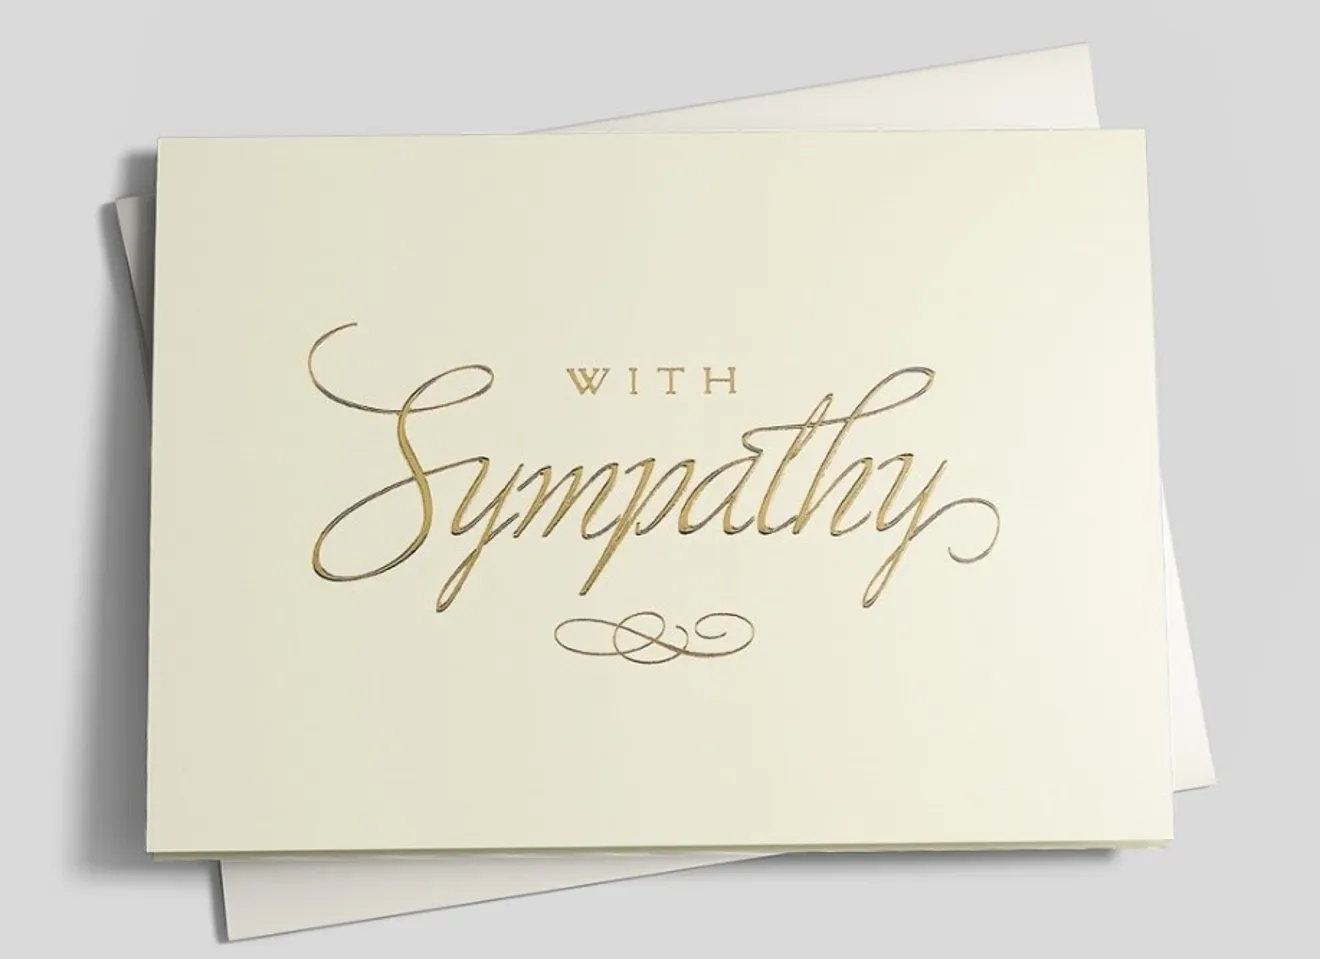 Sympathy-2